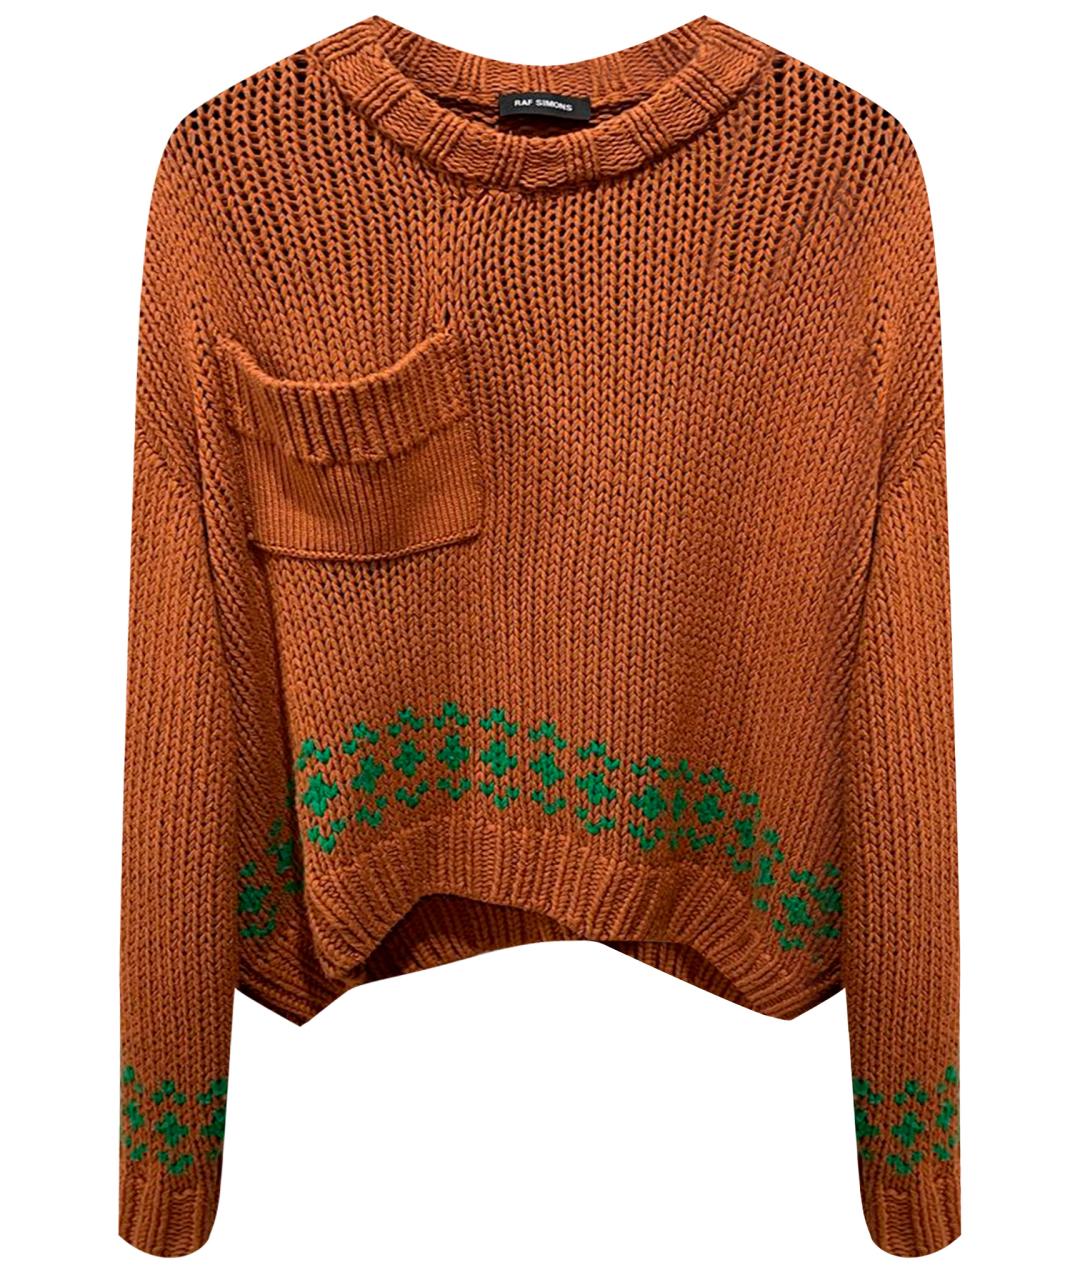 RAF SIMONS Оранжевый шерстяной джемпер / свитер, фото 1